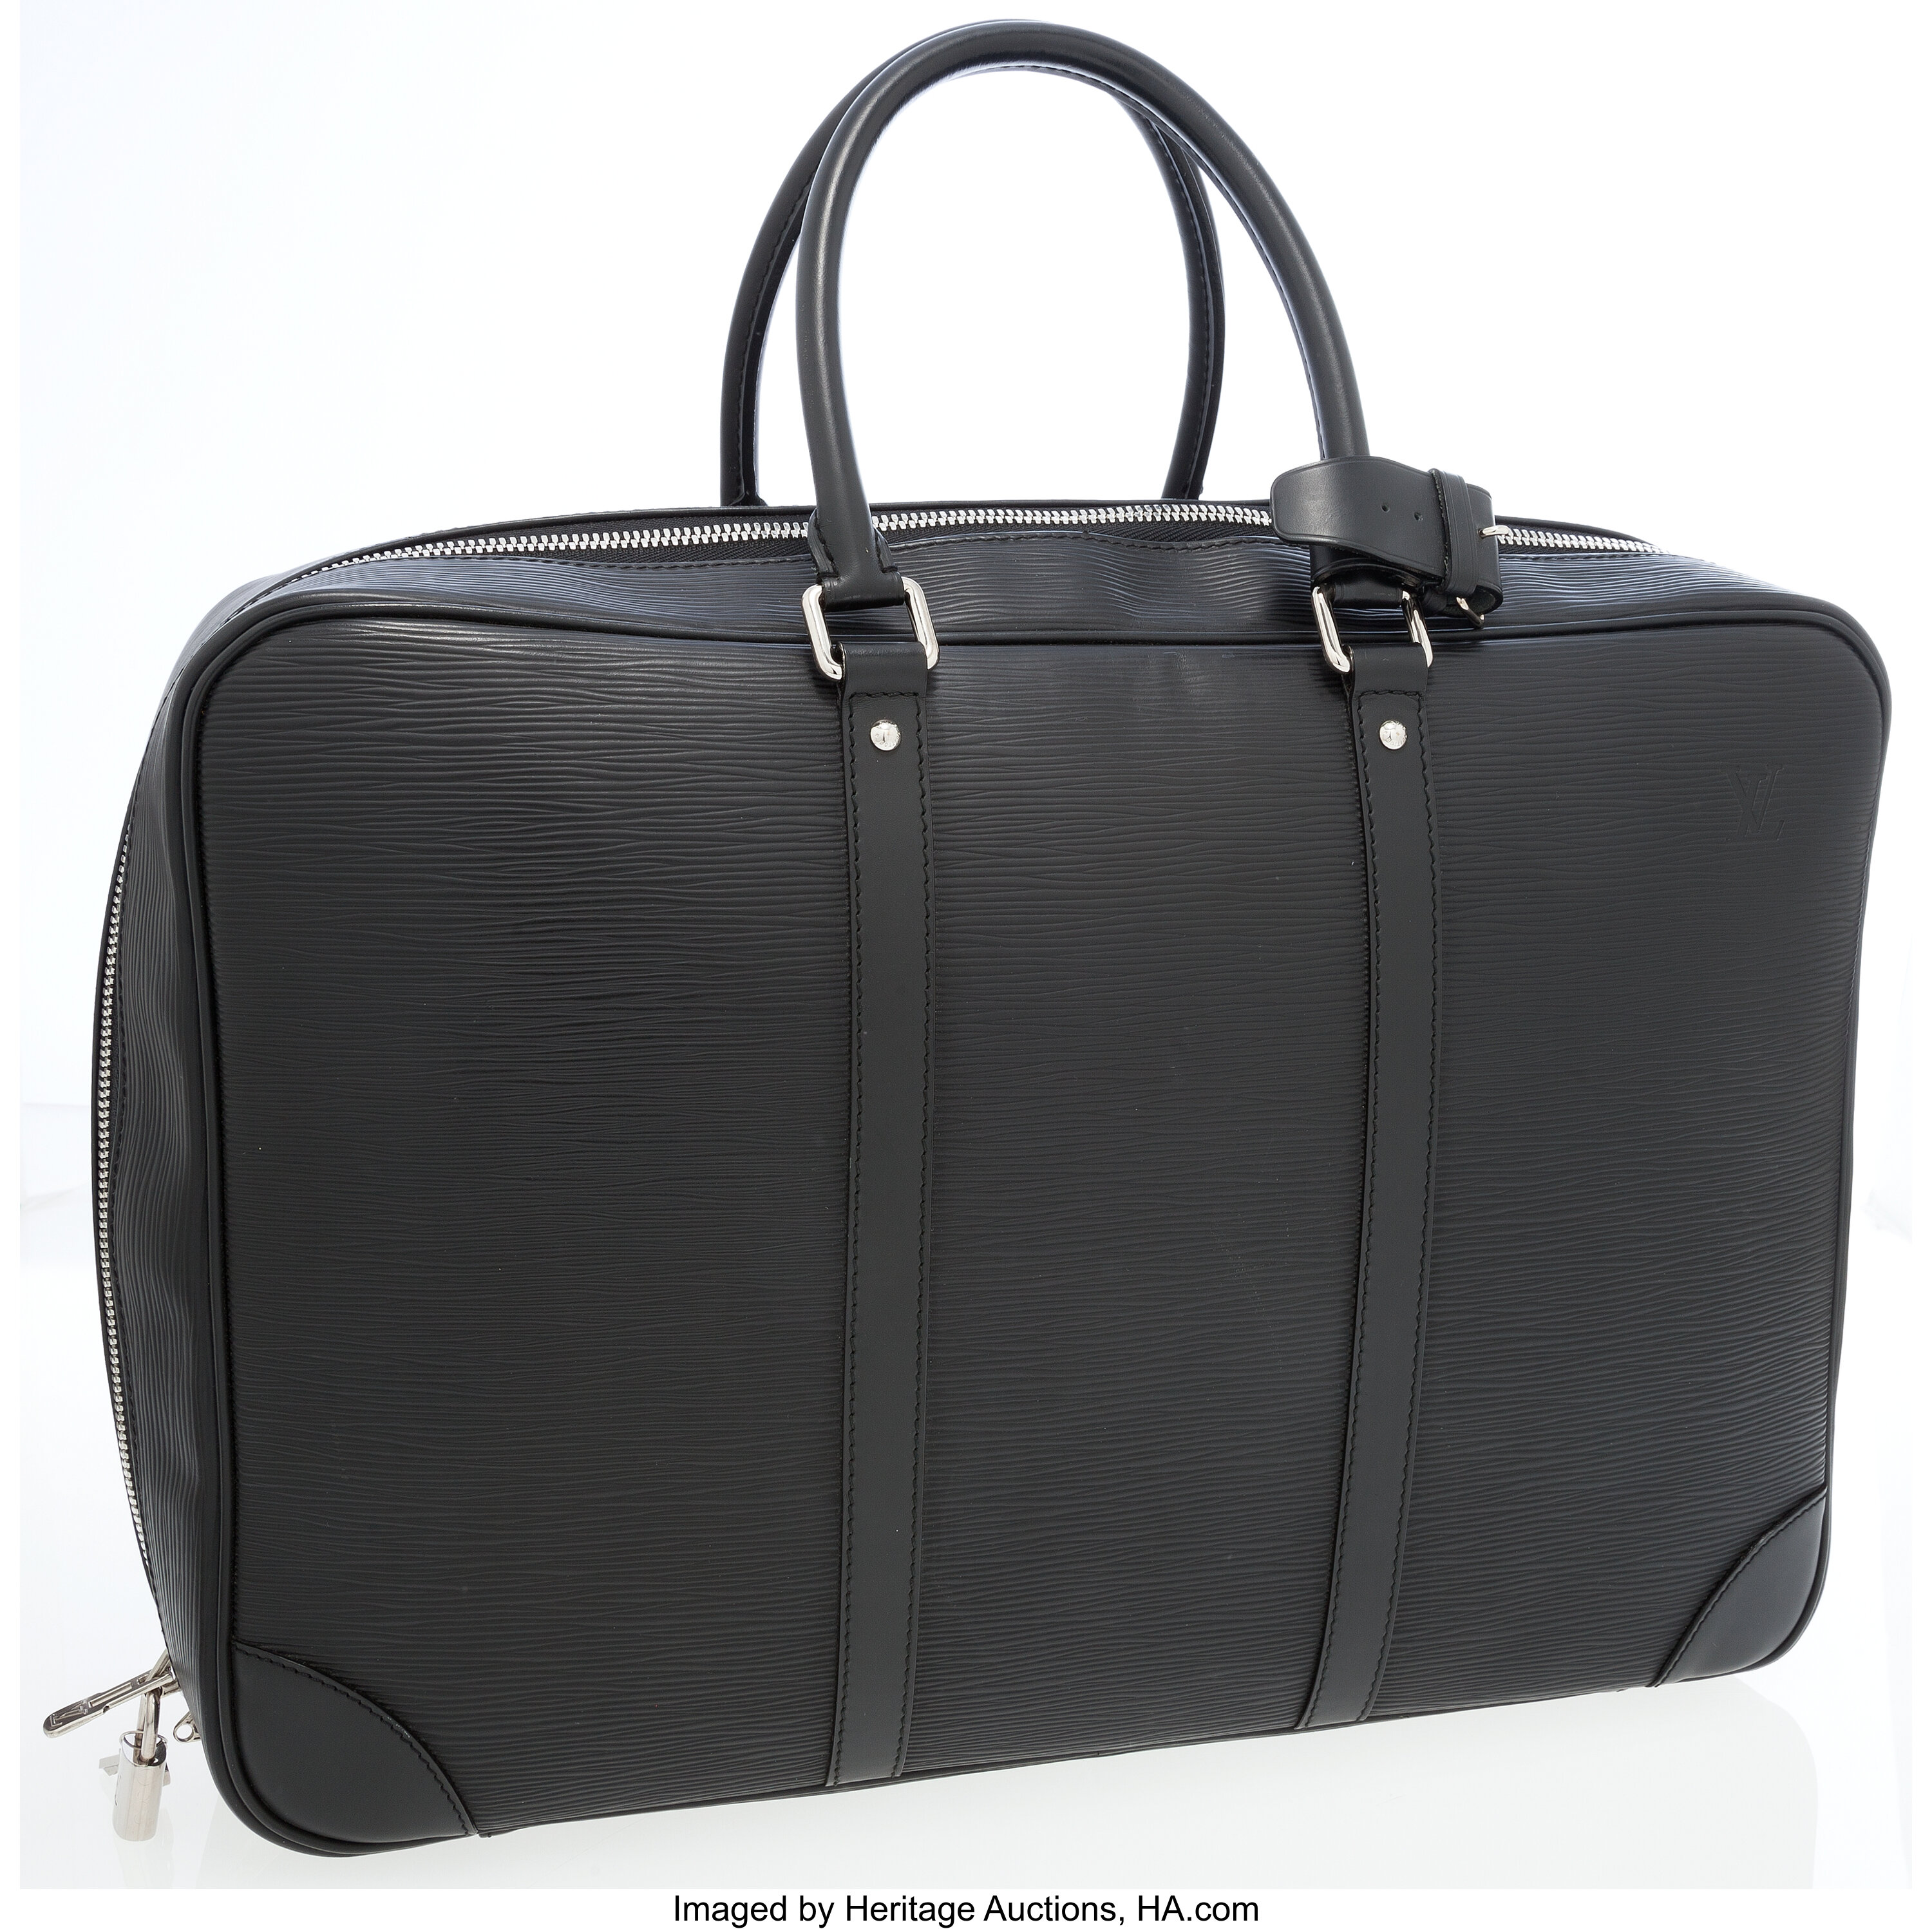 At Auction: A Louis Vuitton Black Ombre Bag. Epi leather exterior